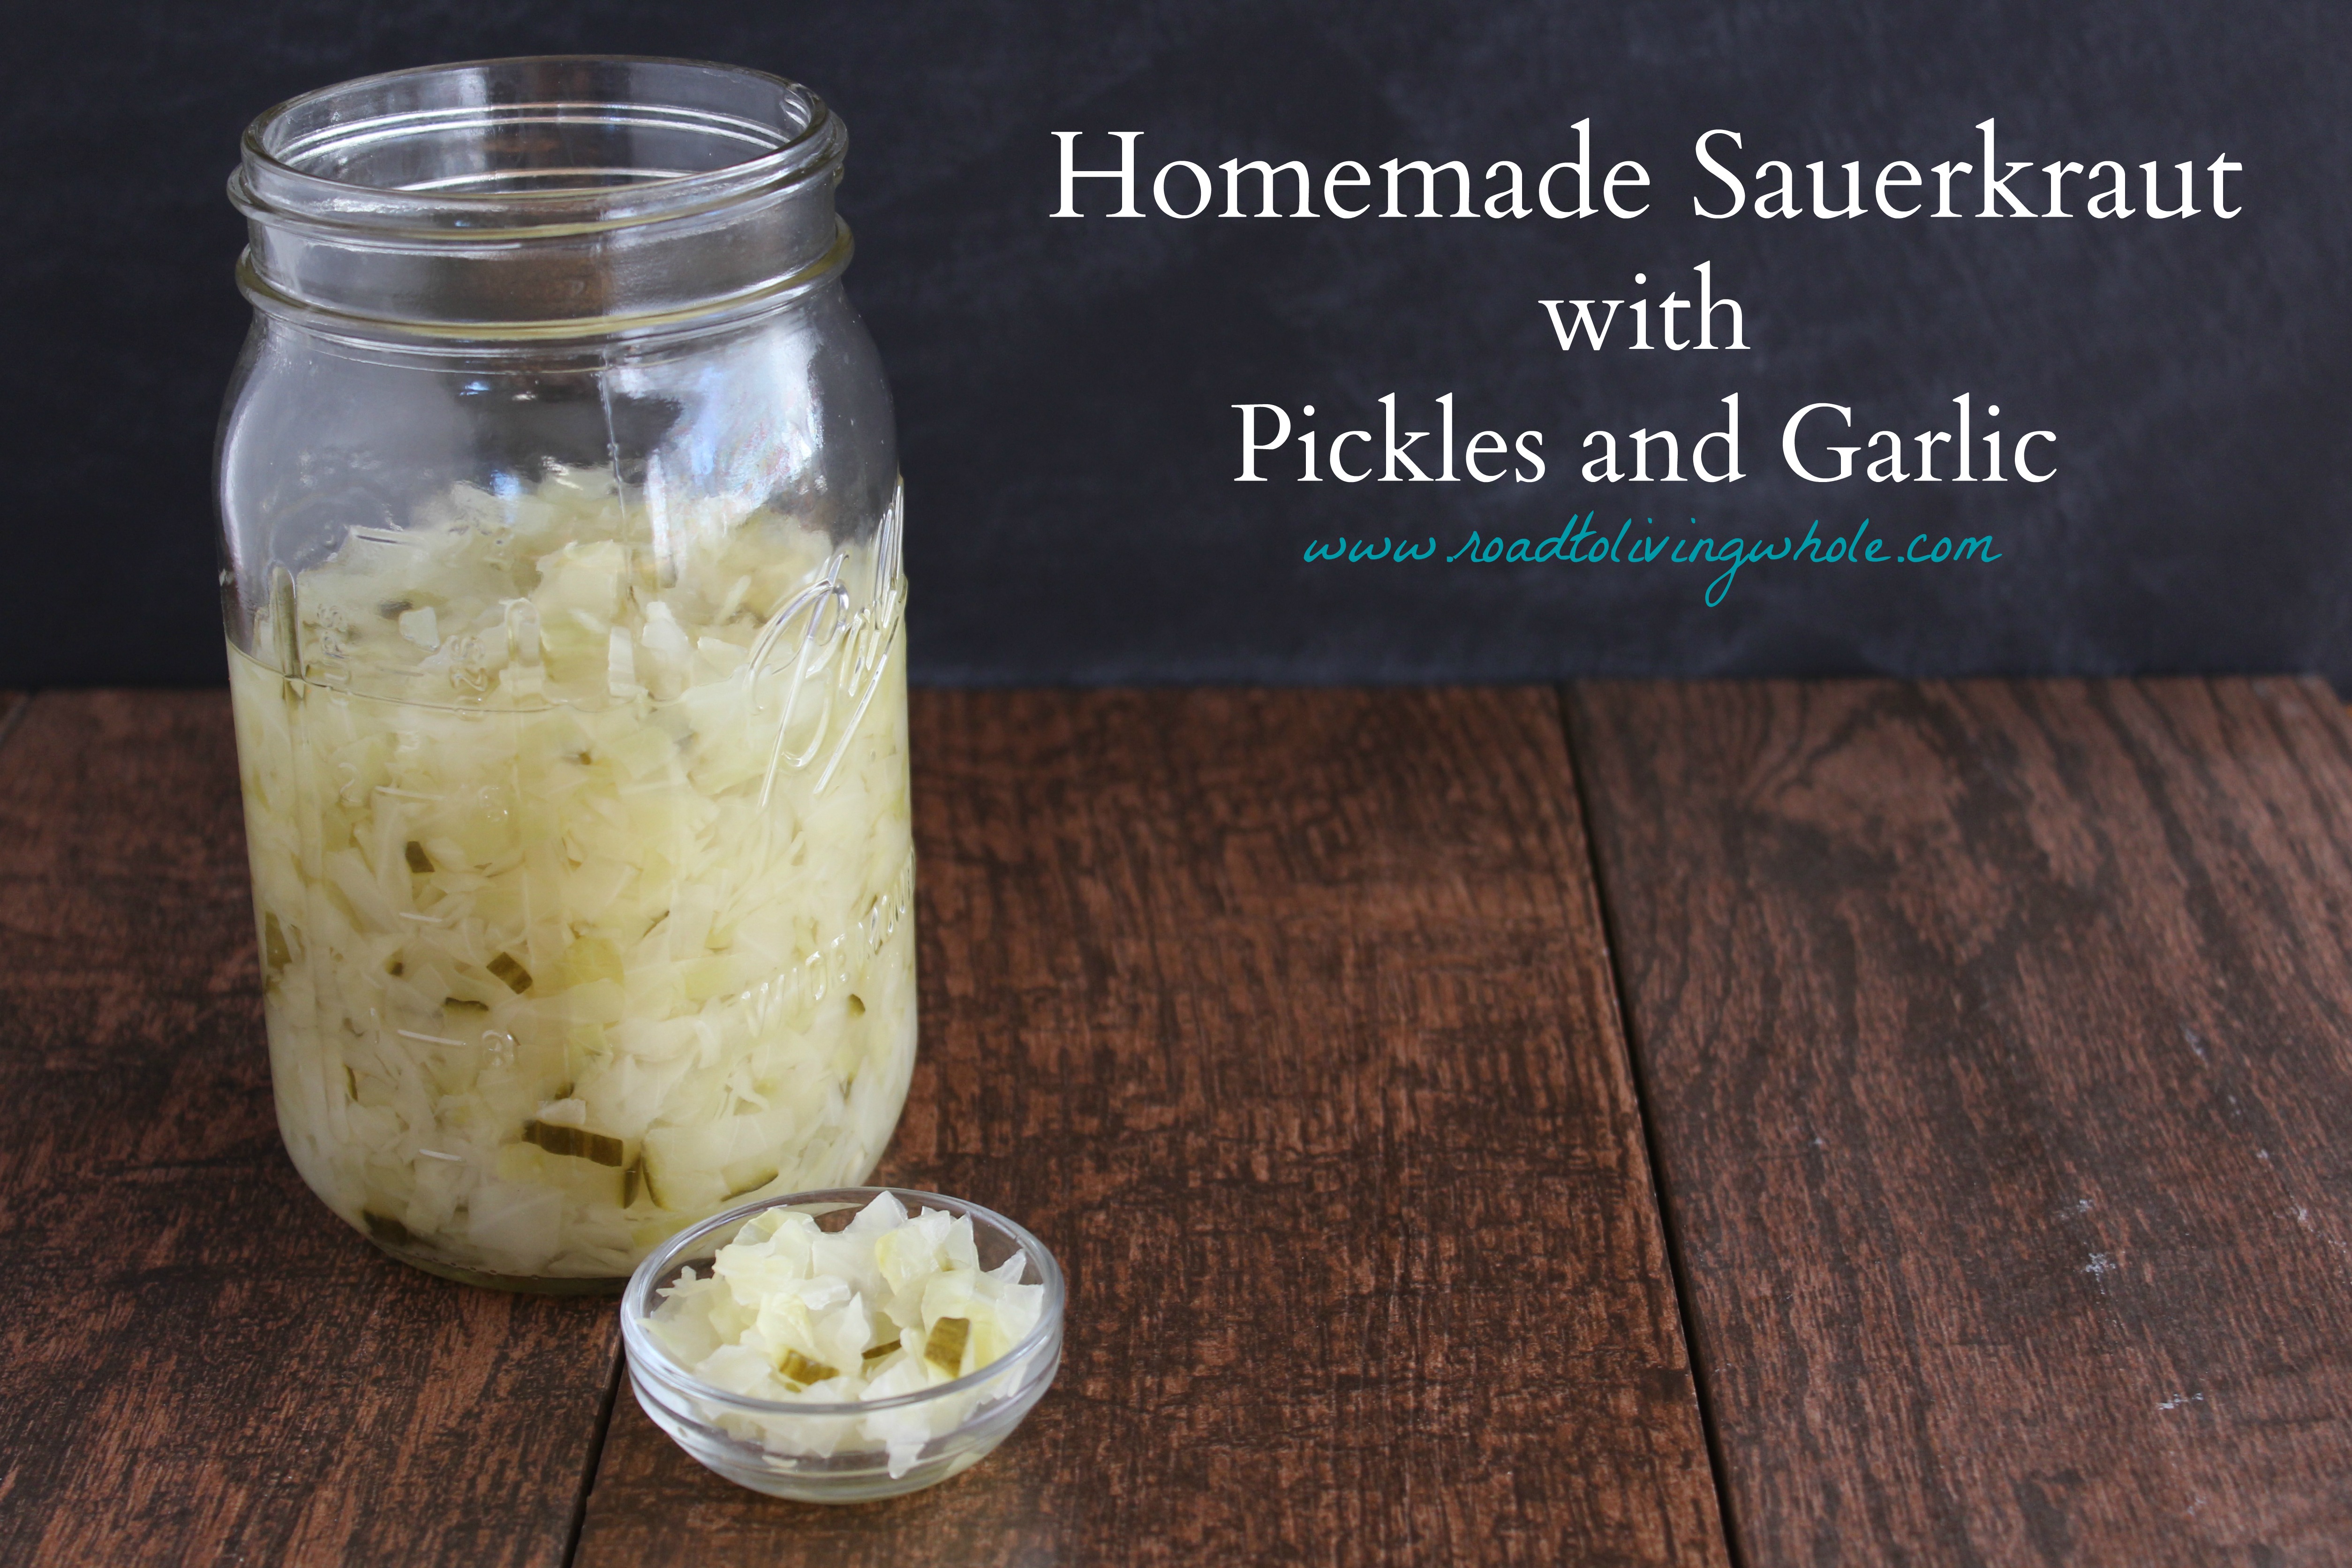 sauerkraut with pickles and garlic